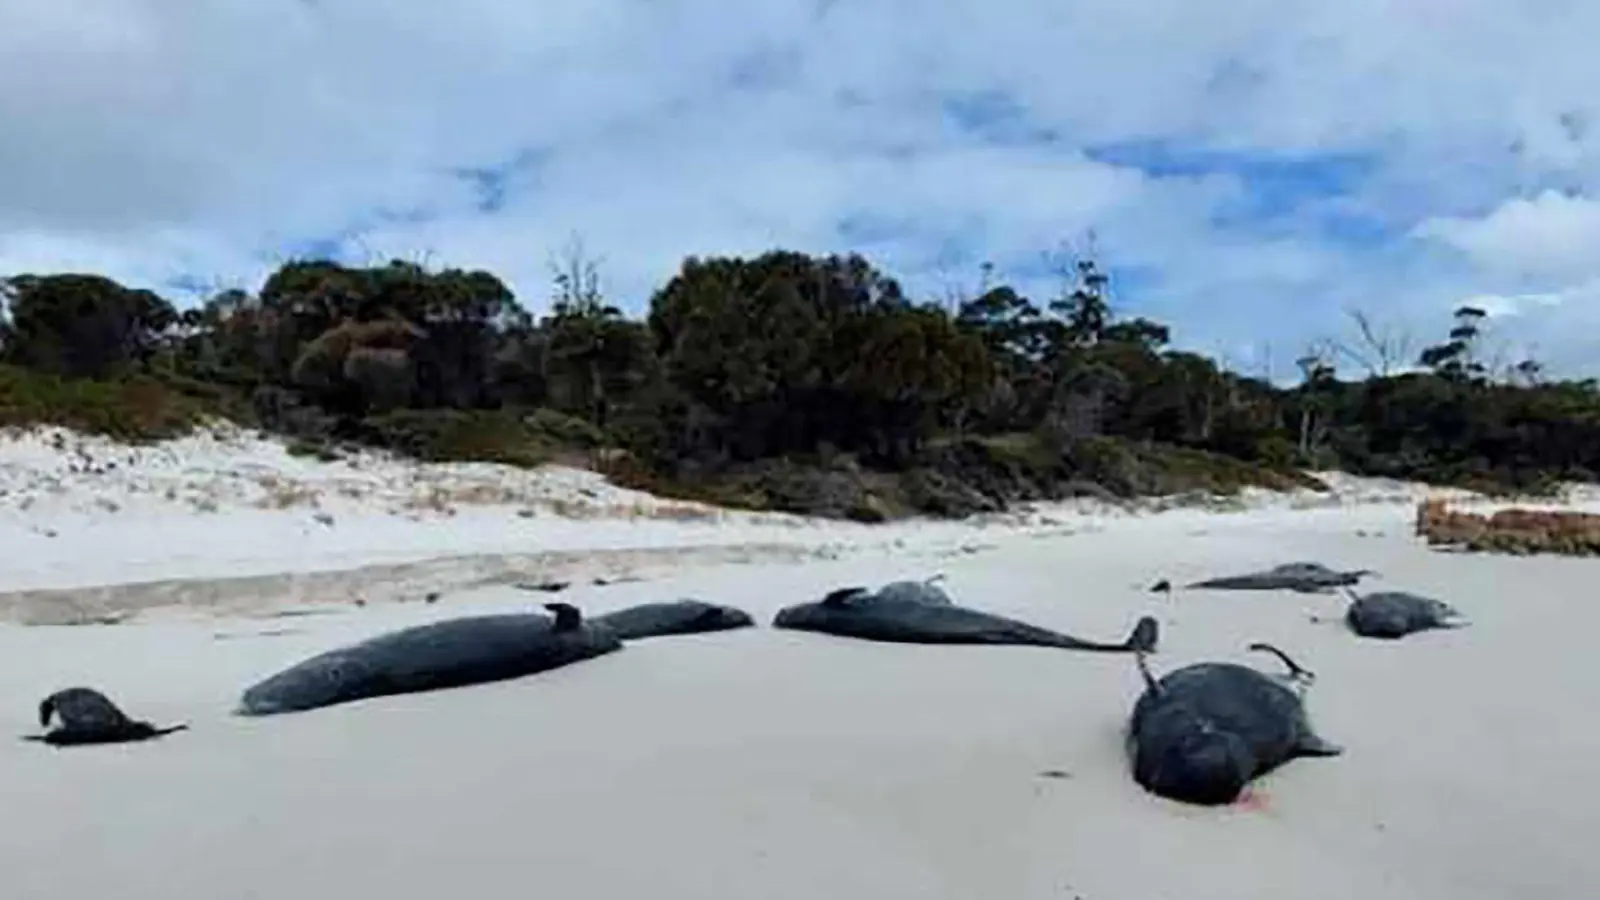 An einem Strand in Tasmanien wurden mehr als 30 tote Grindwale entdeckt. (Foto: -/Department of Natural Resources and Environment Tasmania via AAP/dpa)